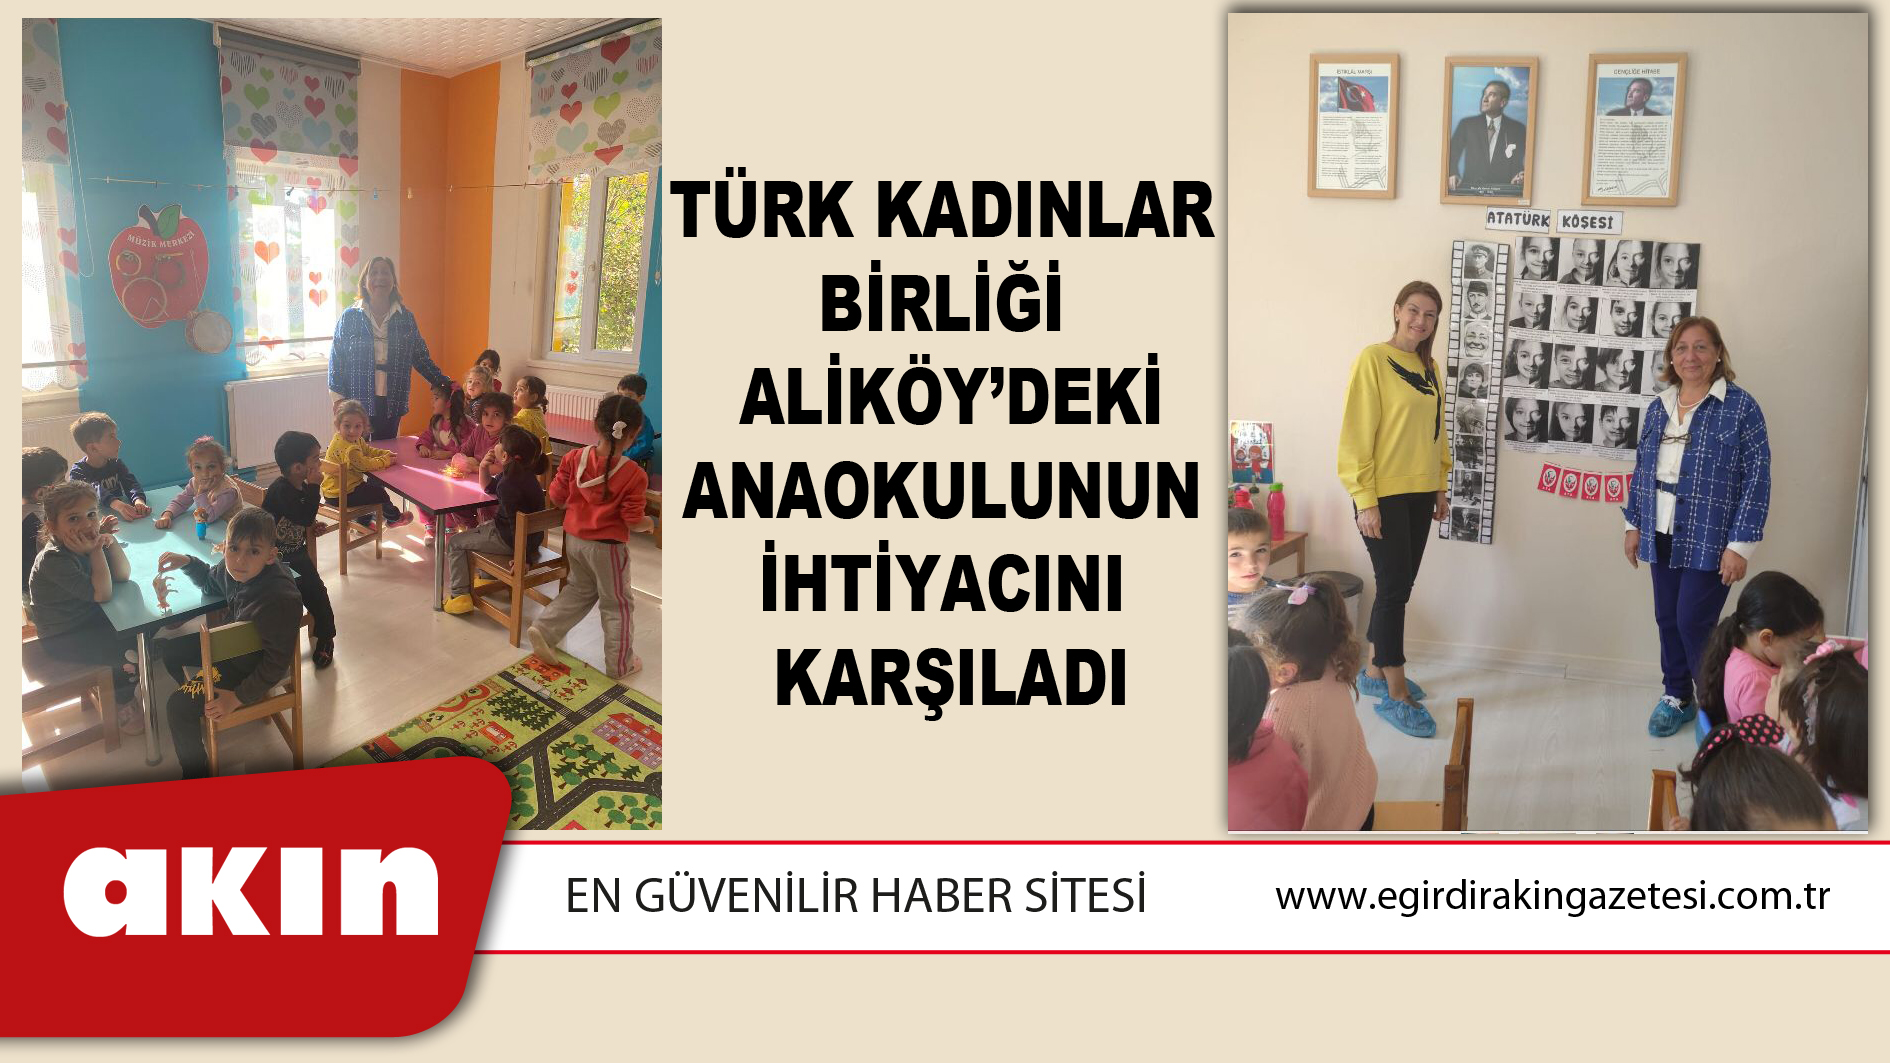 eğirdir haber,akın gazetesi,egirdir haberler,son dakika,Türk Kadınlar Birliği Aliköy’deki Anaokulunun İhtiyacını Karşıladı